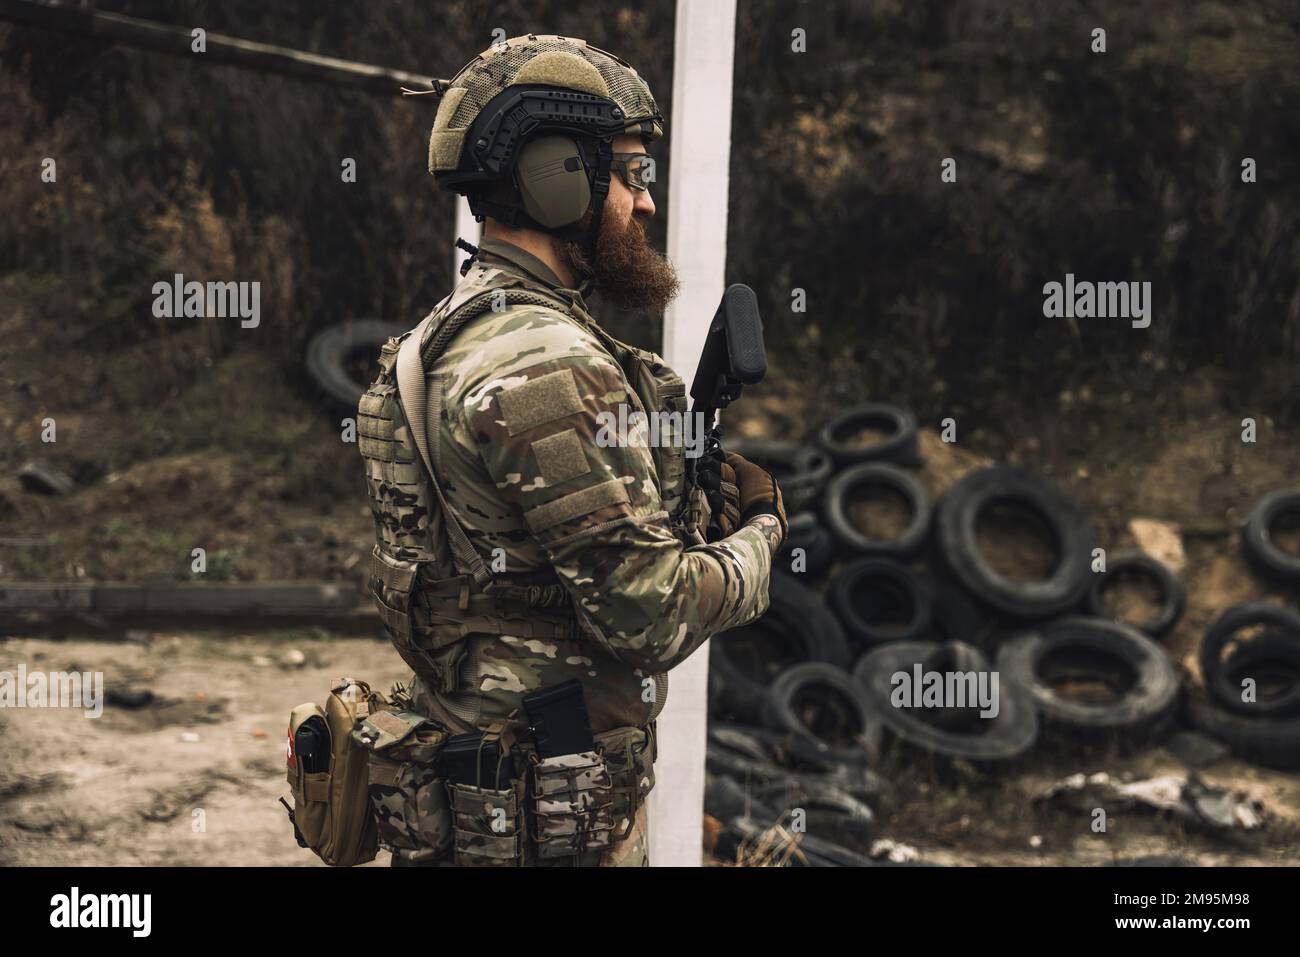 Soldat en camouflage sur un devoir près de la position Banque D'Images